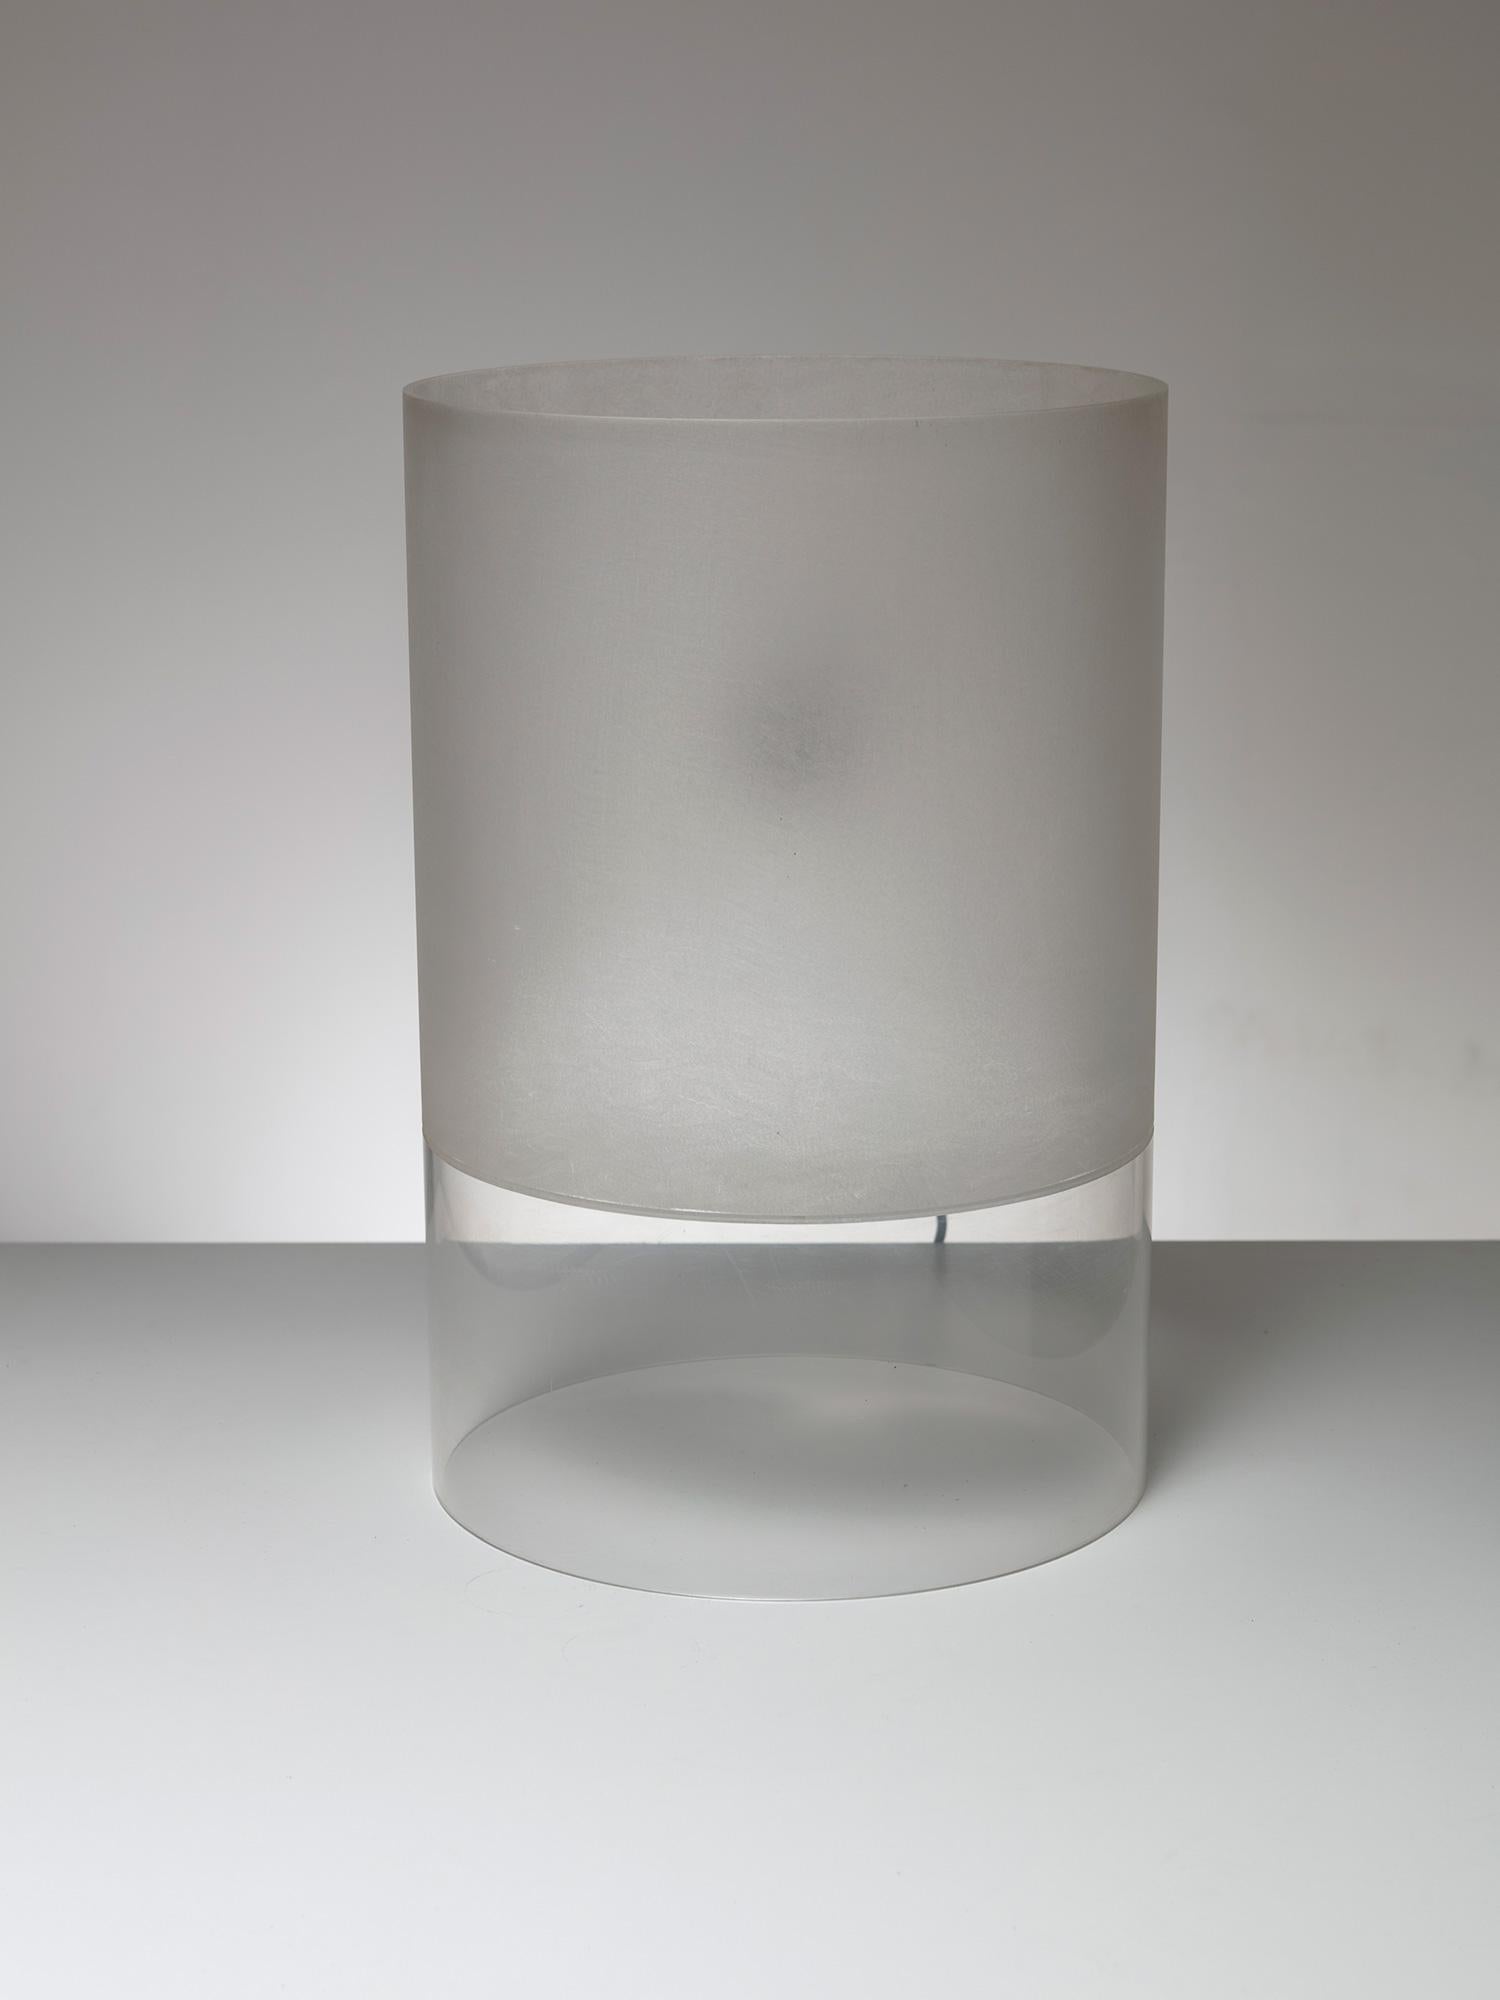 Fatua-Tischleuchte von Guido Rosati, ein Einzelstück
Die Leuchte besteht aus einem Plexiglaszylinder mit einem sandigen Teil, um die Streuung der verborgenen Lichtquelle zu verbessern.
Dieses Stück wurde von Rosati dem Direktor von Fontana Arte